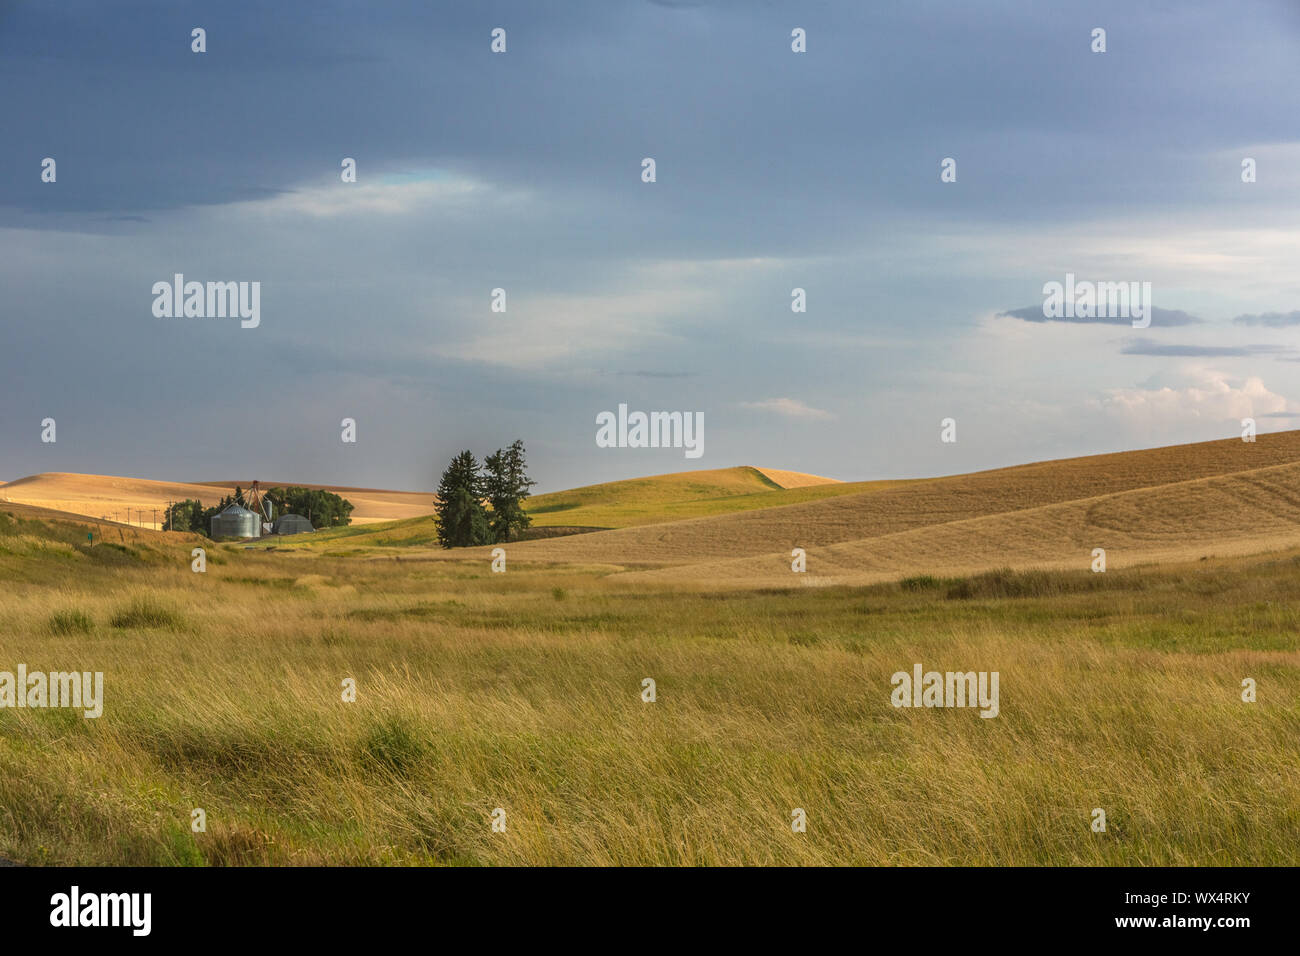 Vistas a los campos de trigo de Steptoe Butte, Palouse Valley, Estado de Washington oriental Foto de stock